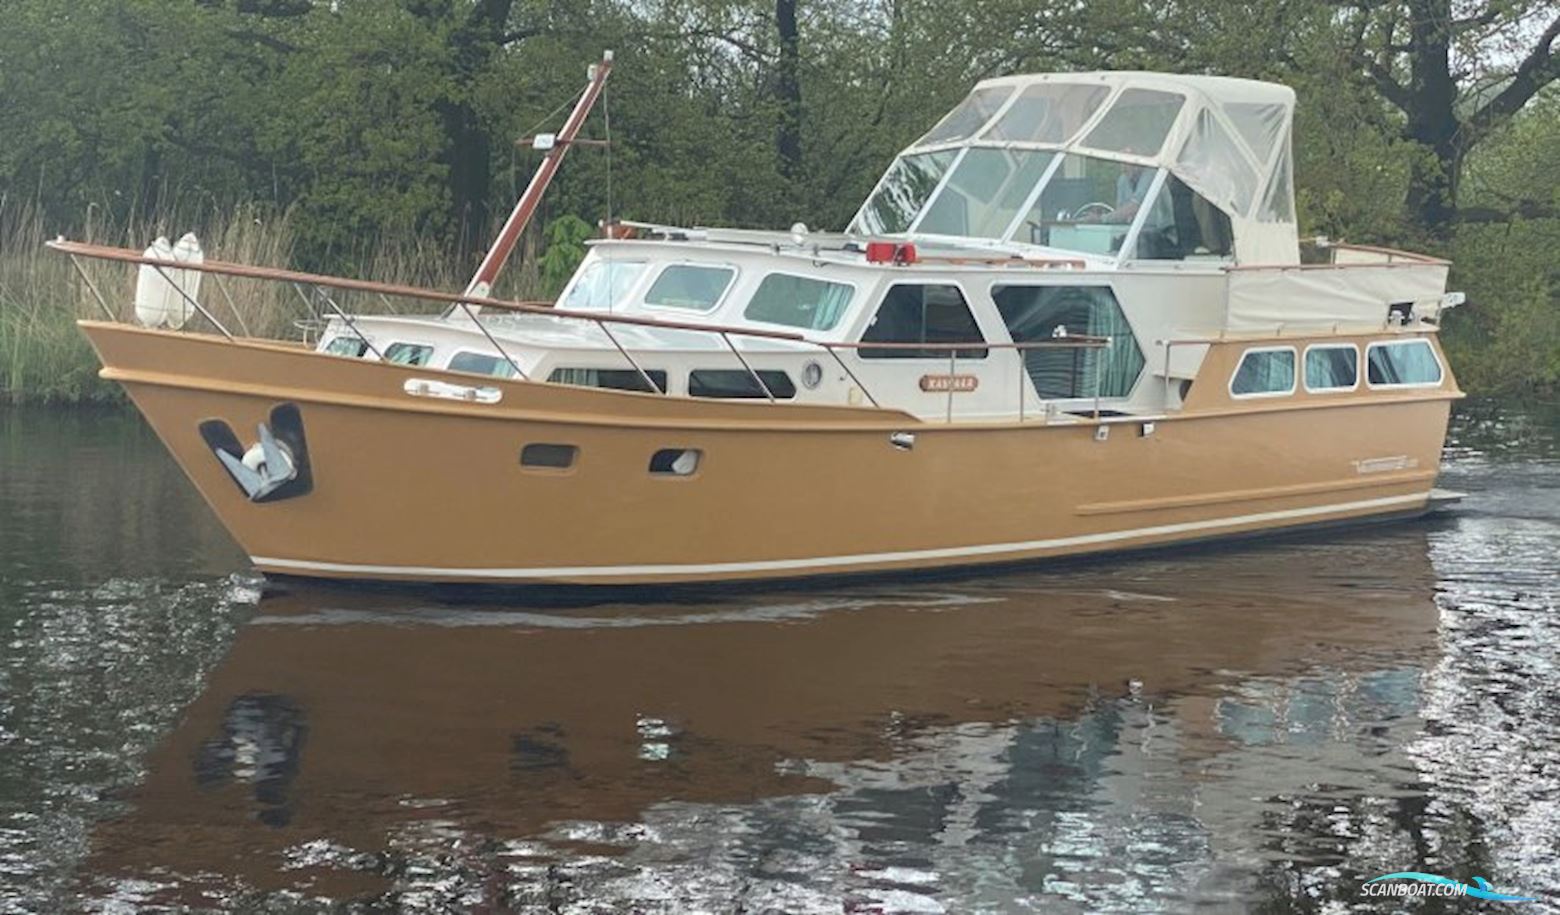 Valkkruiser 1350 Motor boat 1977, with Daf engine, The Netherlands